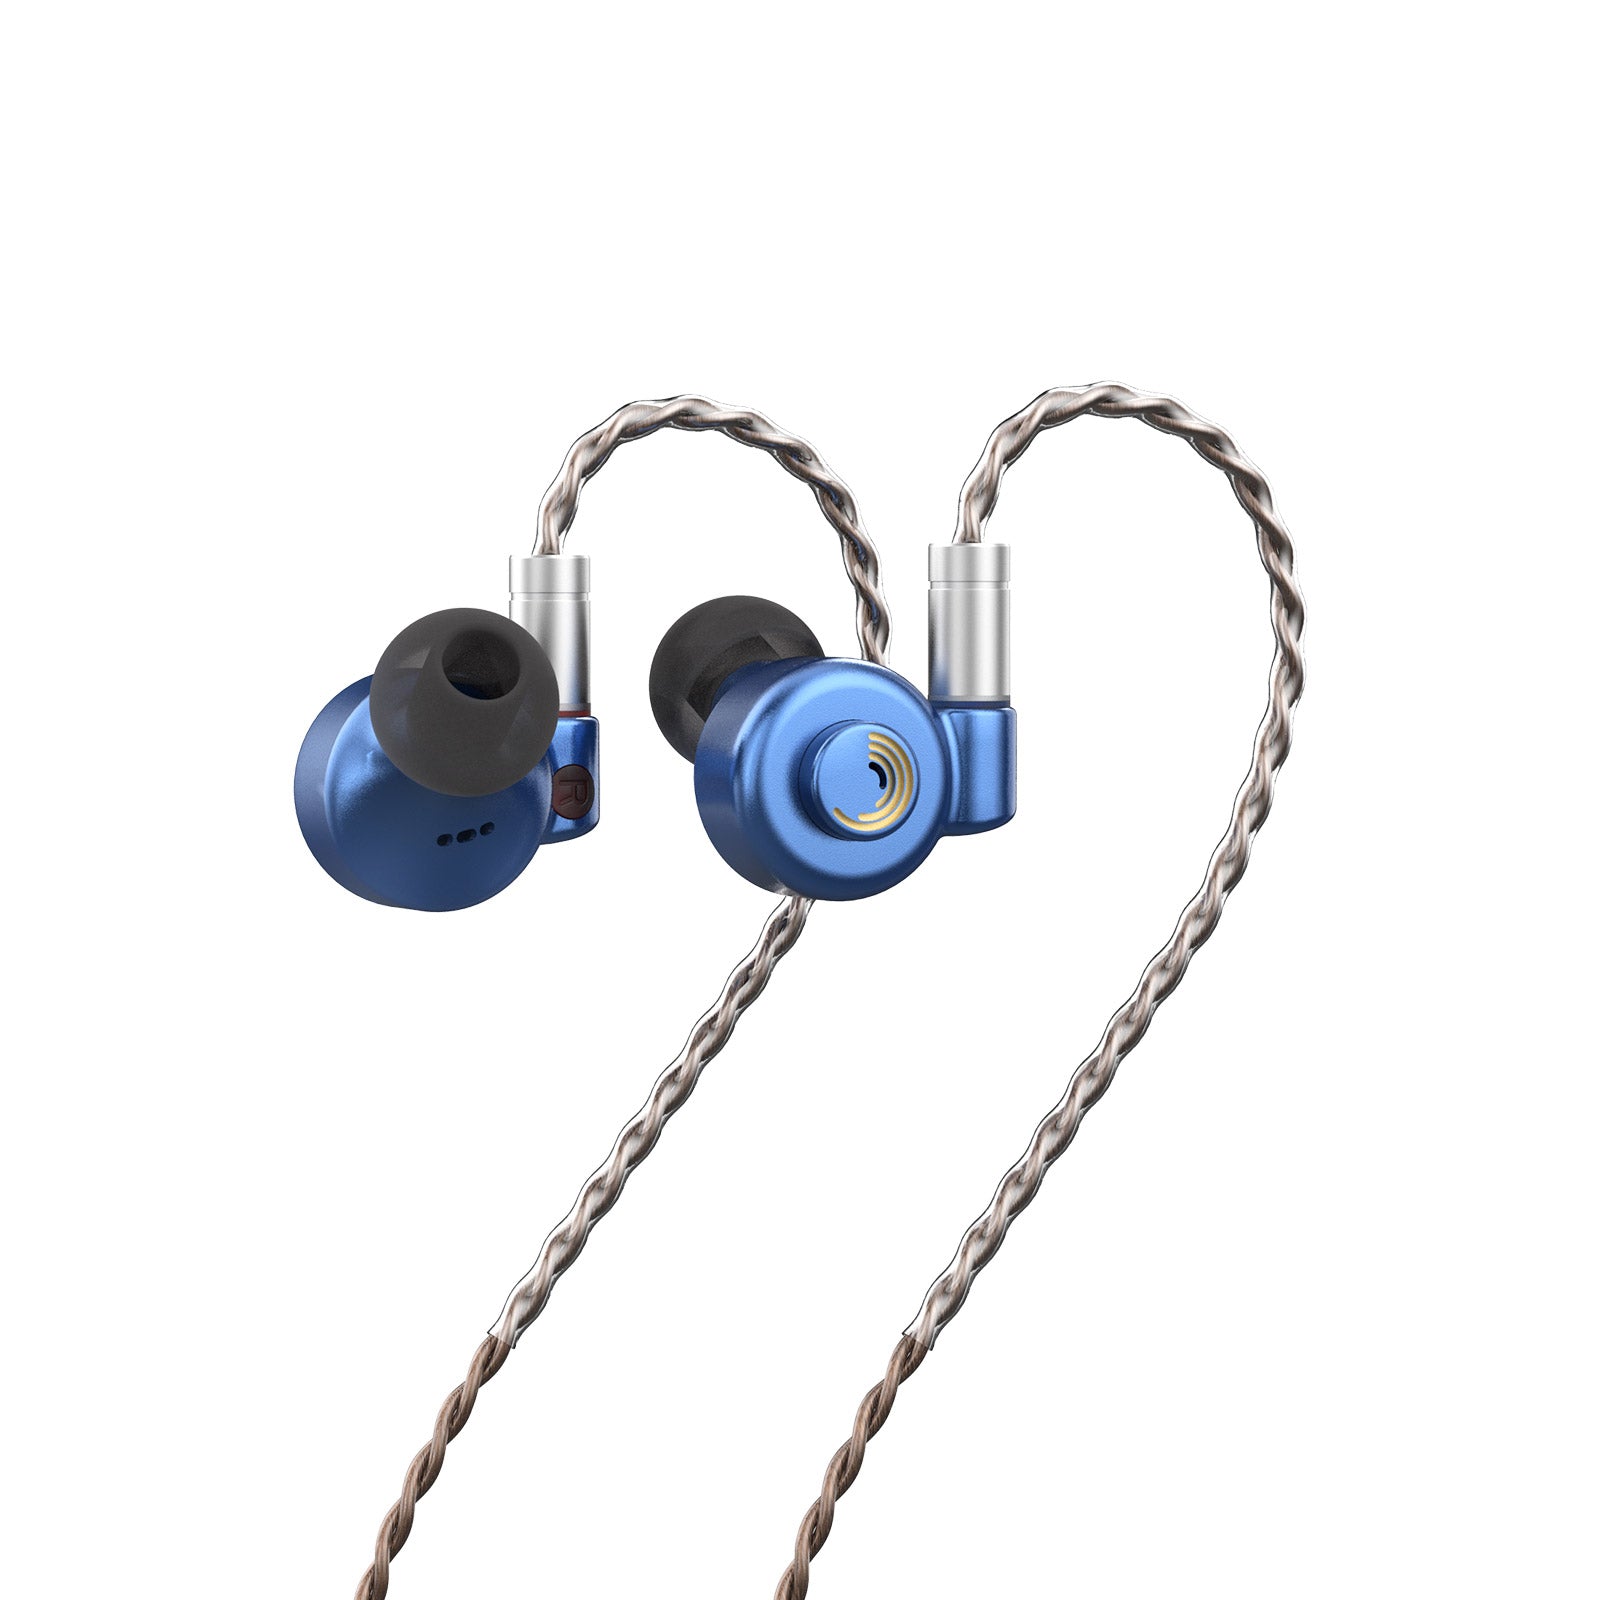 LETSHUOER D13-Custom 13mm DLC diaphragm dynamic driver in ear earphone